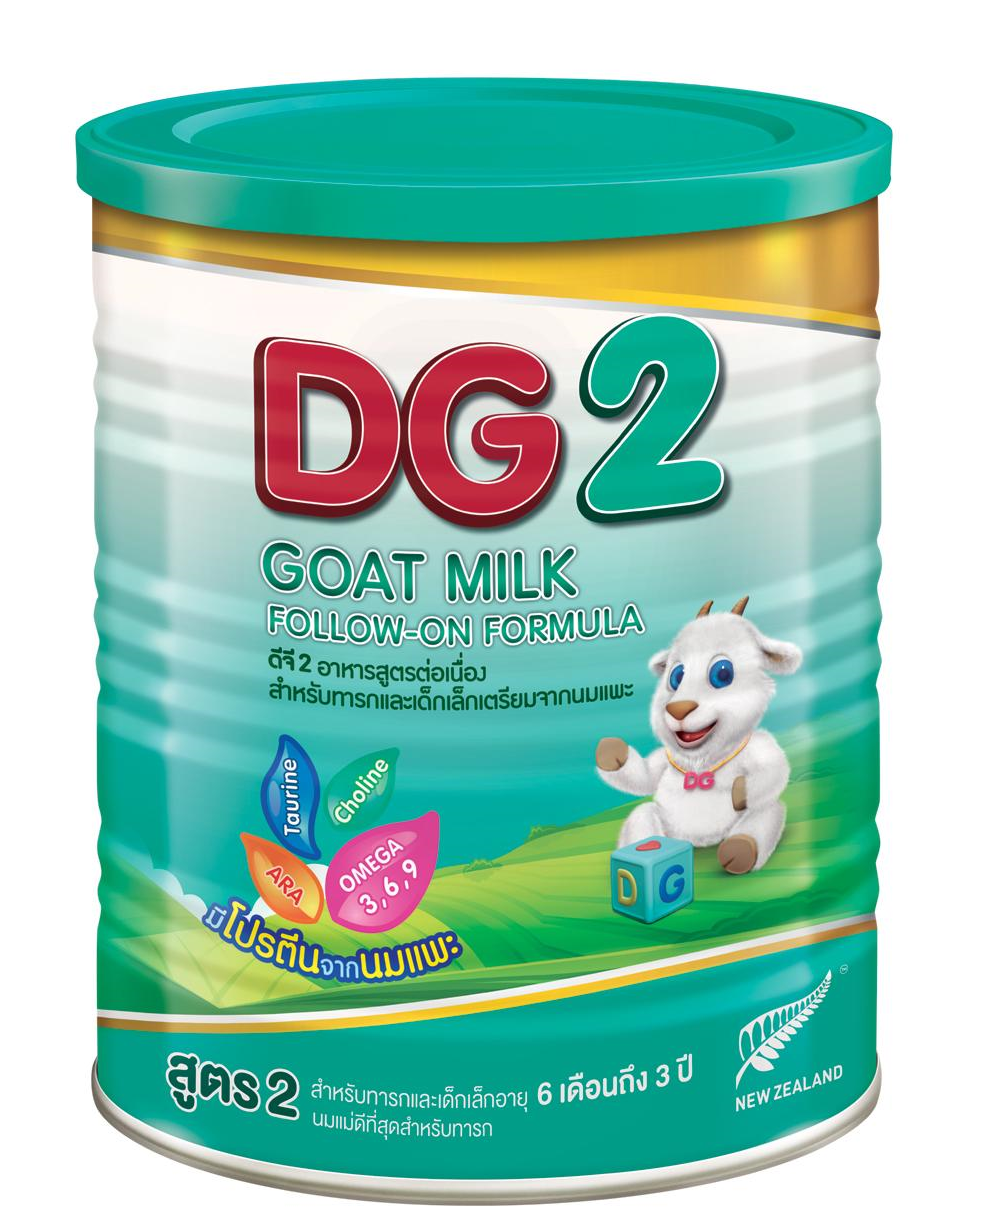 คูปองส่งฟรีDG2 นมแพะ ดีจี2 ขนาด 400 กรัม 1 กระป๋อง สำหรับทารกและเด็กเล็ก ตั้งแต่ 6 เดือน ถึง 3 ปี